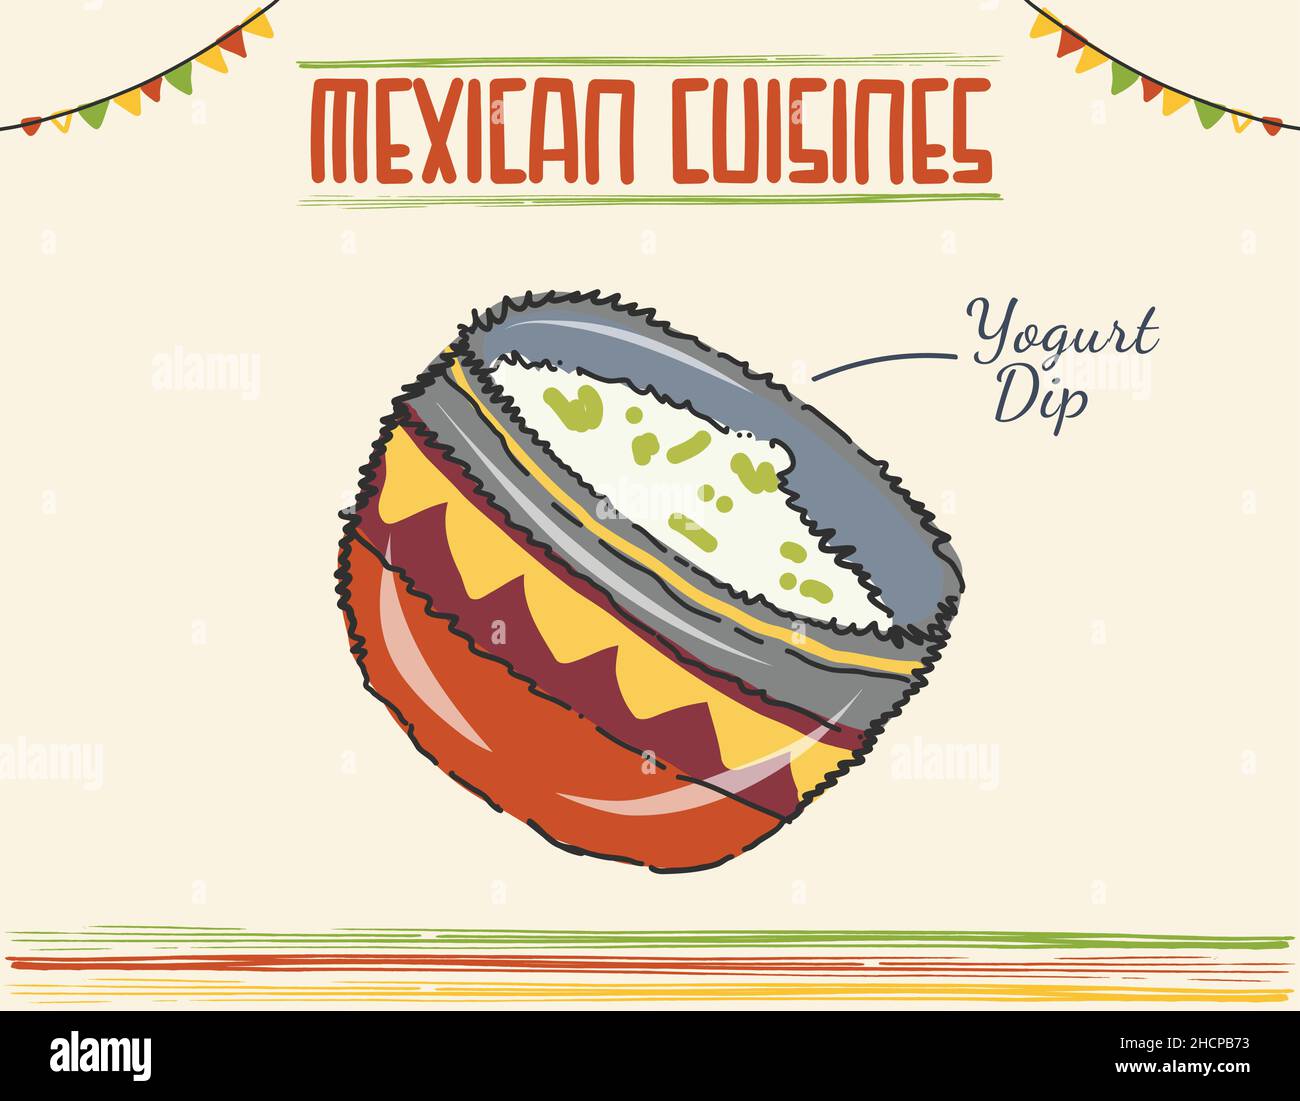 Mexikanischer Joghurt Dip traditionelle Gericht, weiße Sauce. Minimal farbige isolierte Vektordarstellung Stock Vektor